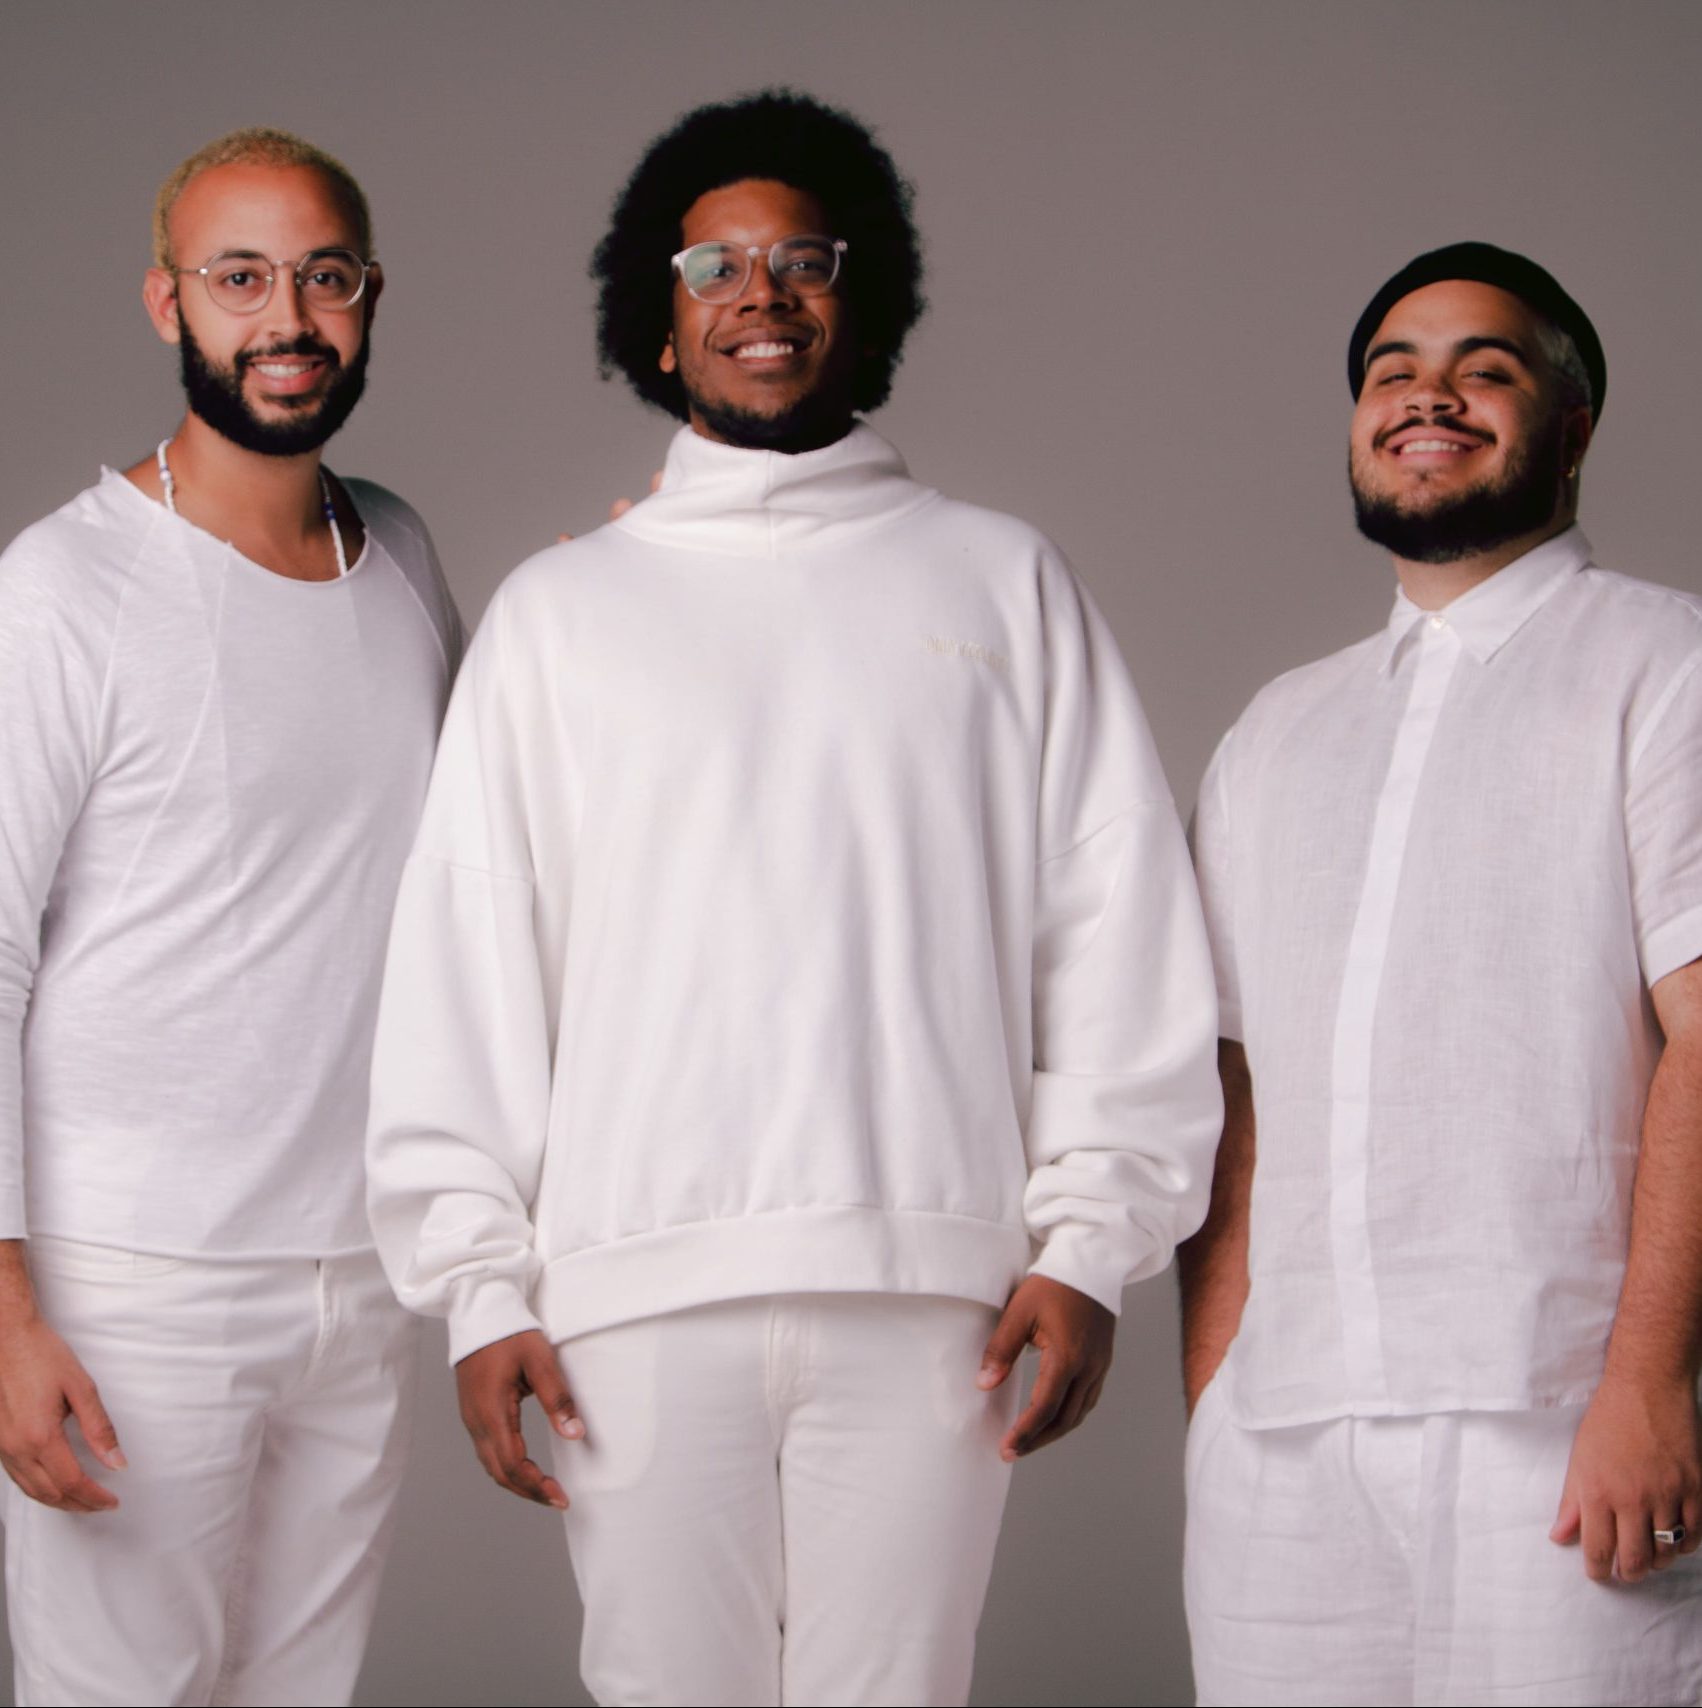 Na imagem estão os Gilsons, três homens negros que vestem roupas brancas.